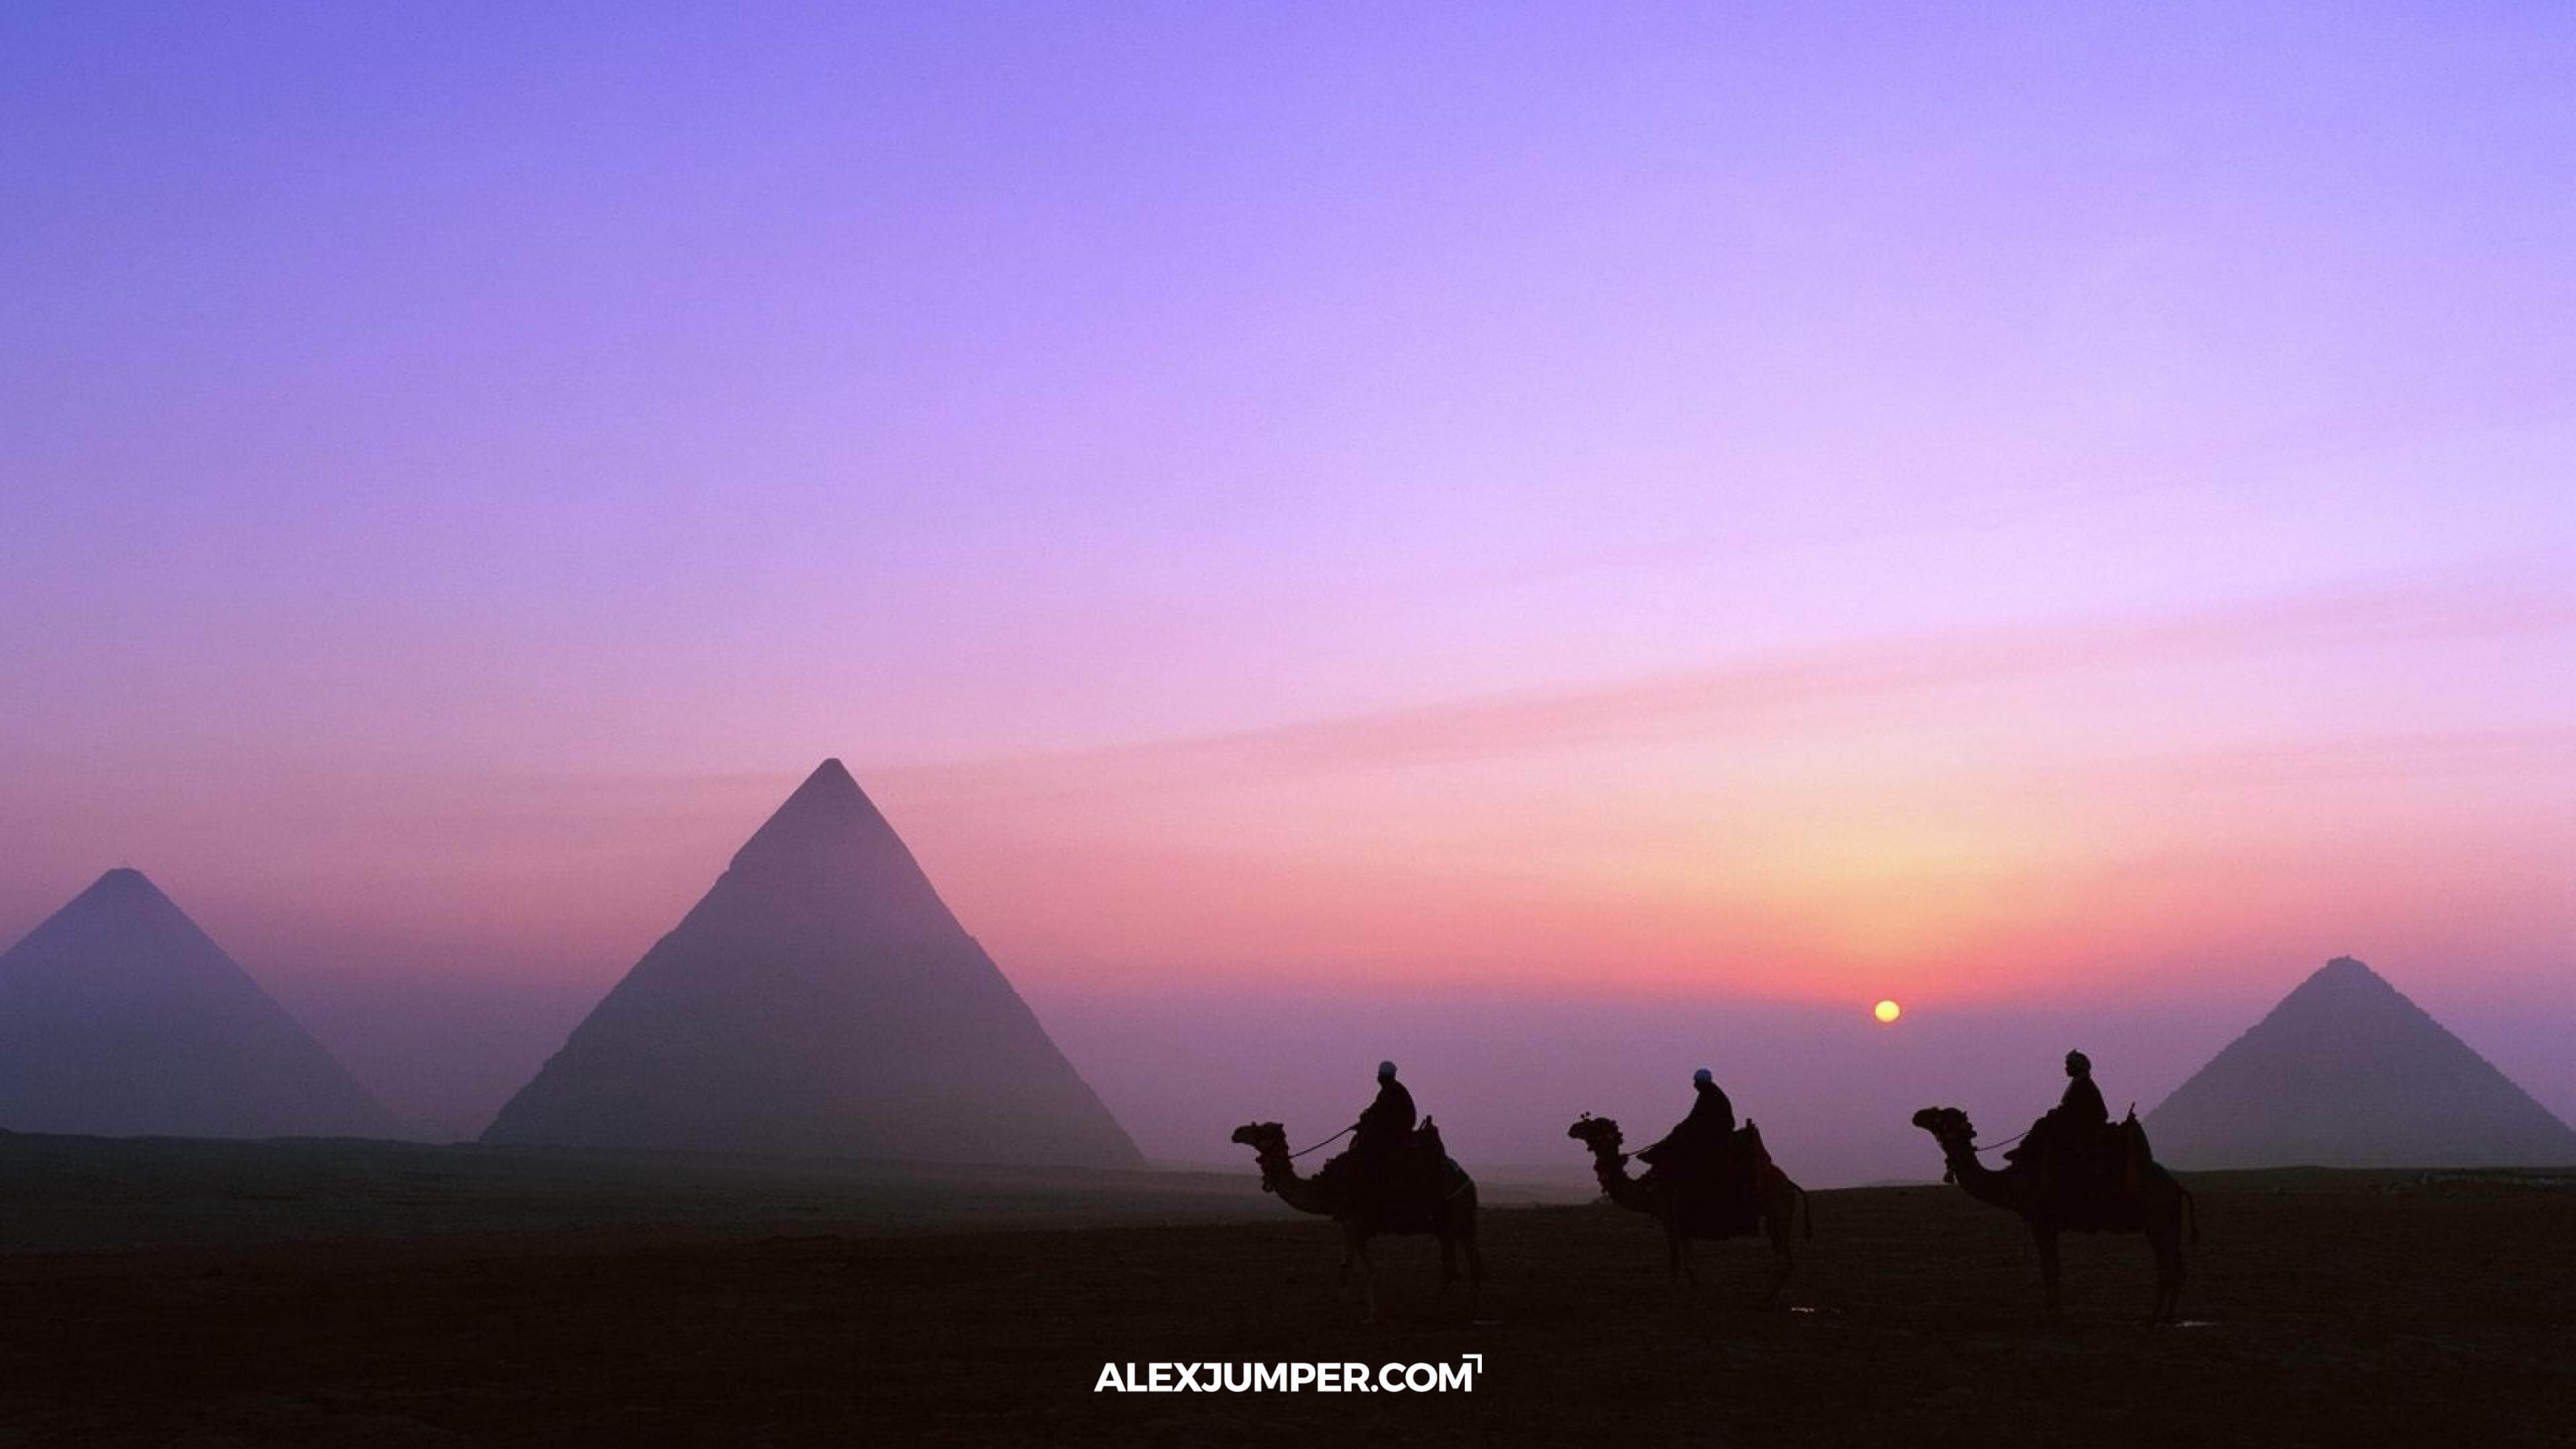 teletransportacion-posible-24horas-egipto-piramides-alex-jumper